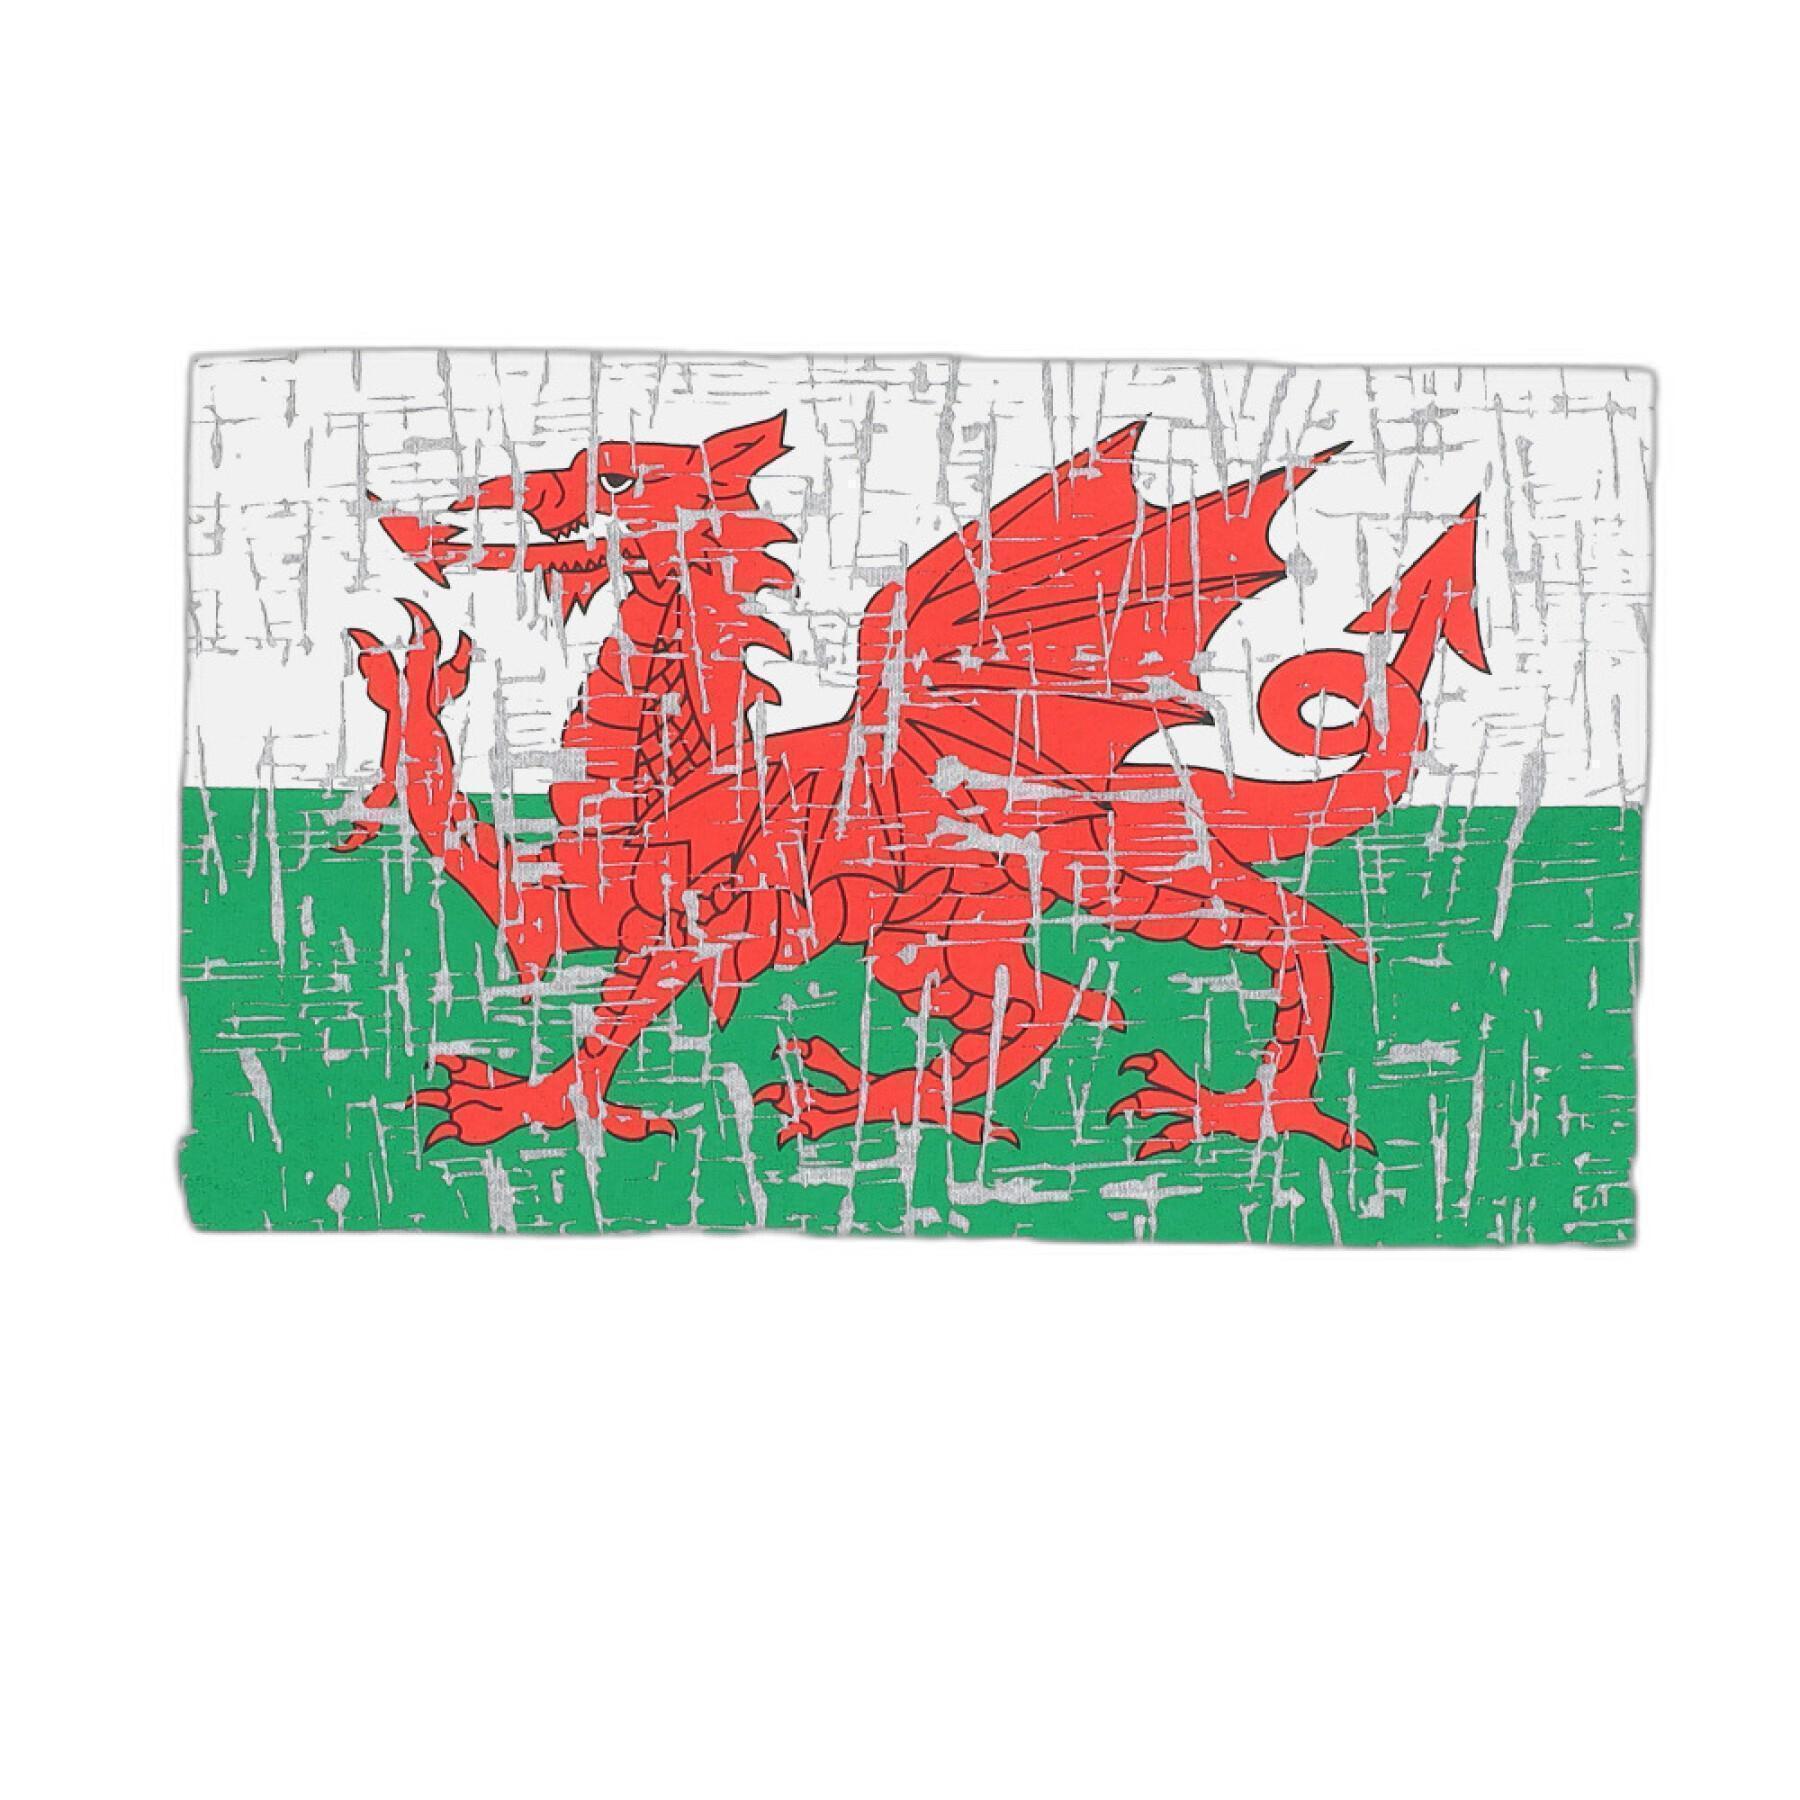 Camiseta para niños Pays de Galles Rugby XV 2020/21